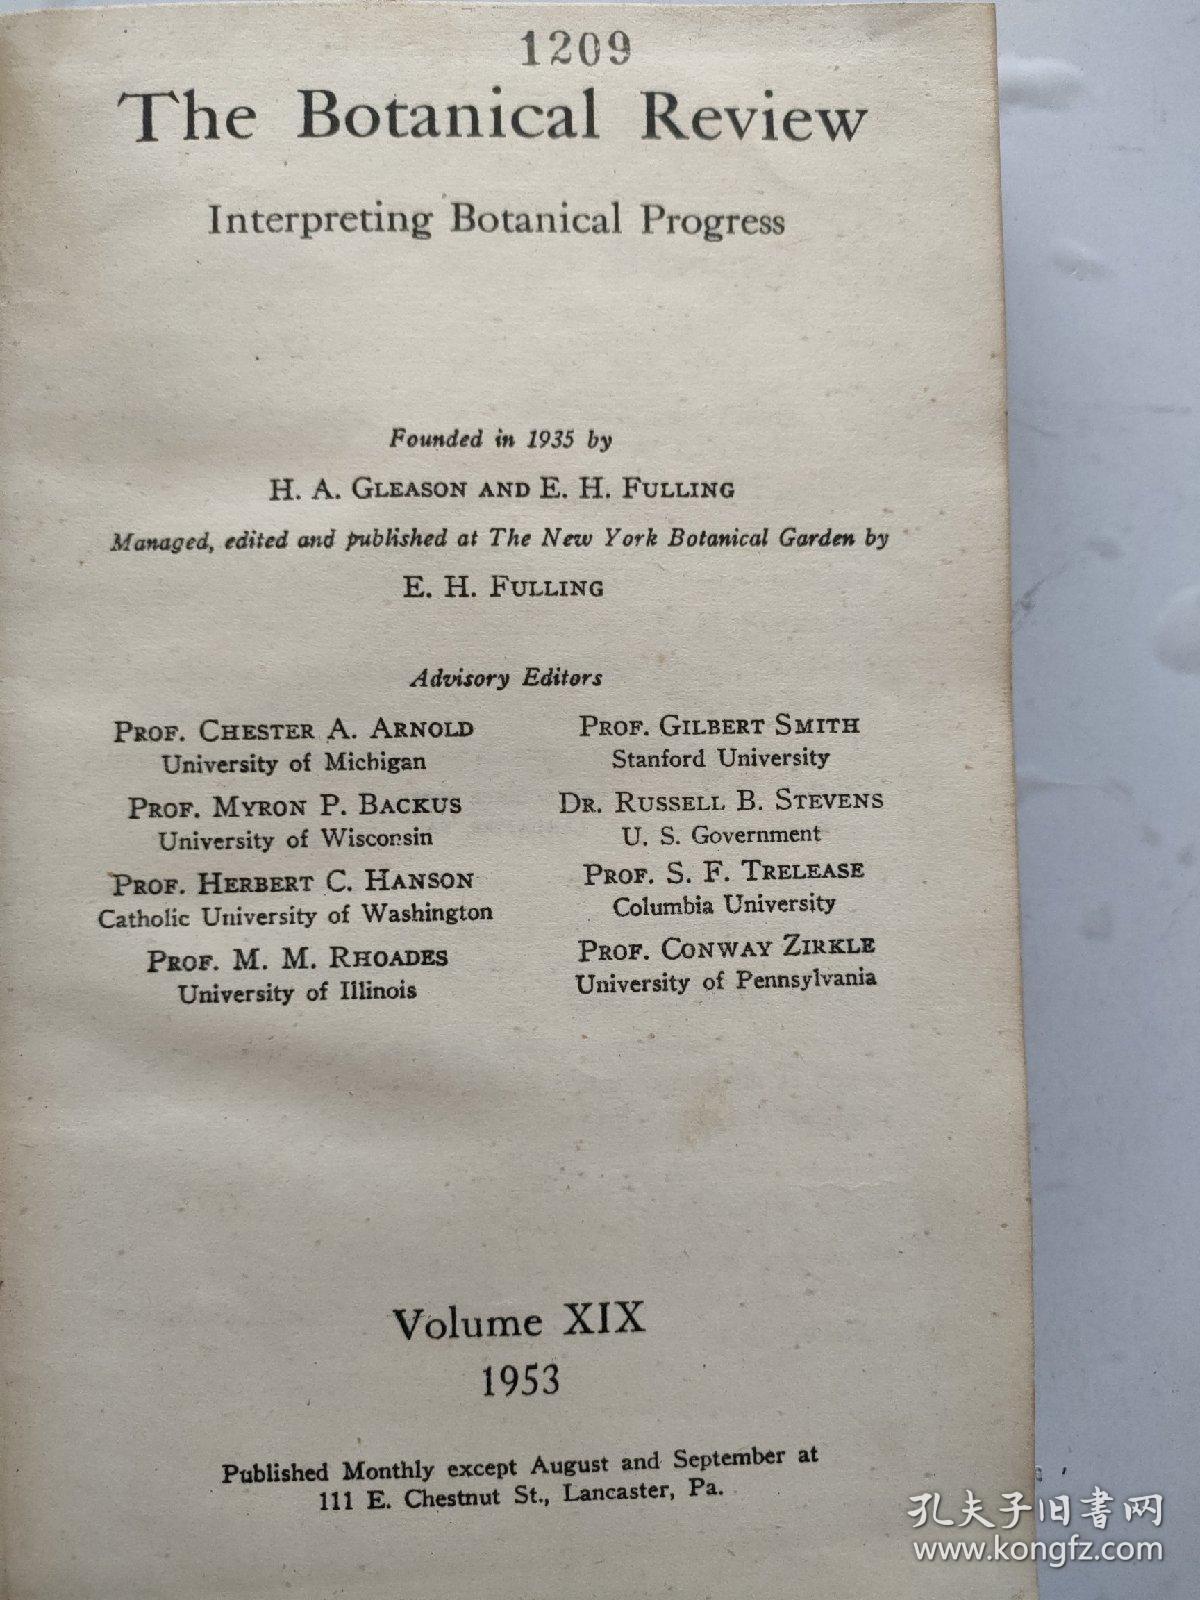 外文版 英文版 植物学评论第十九卷（1953年）硬精装16k  外品如图所示  内页无写划 好品